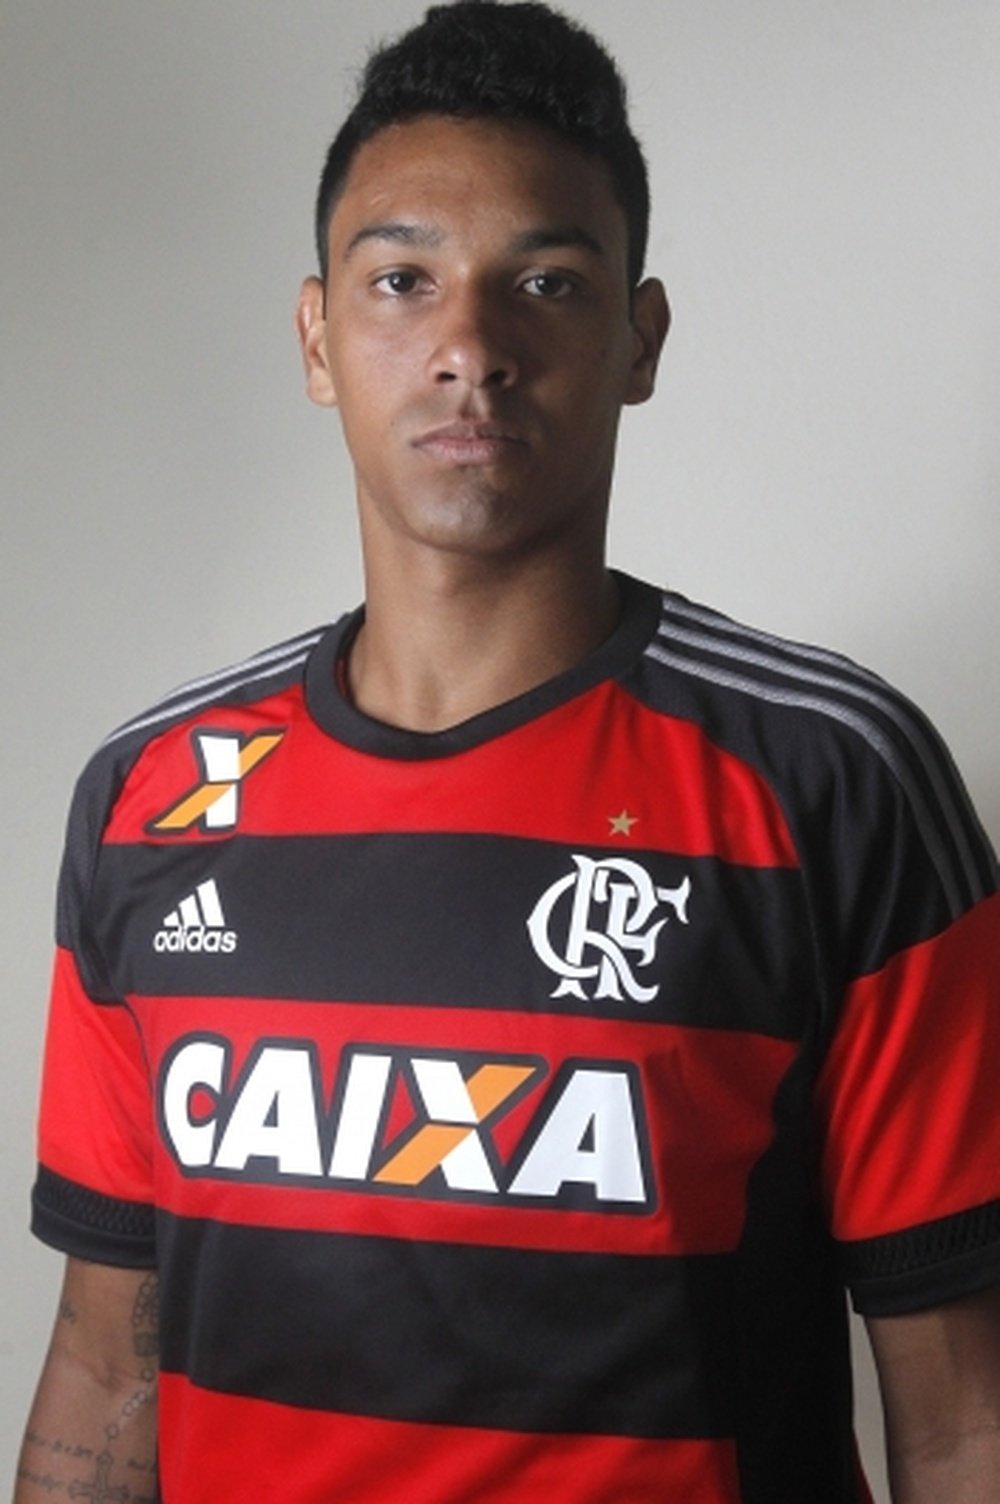 António Carlos, já passou pelo Flamengo, a partir de agora integrará o Palmeiras. Flamengo